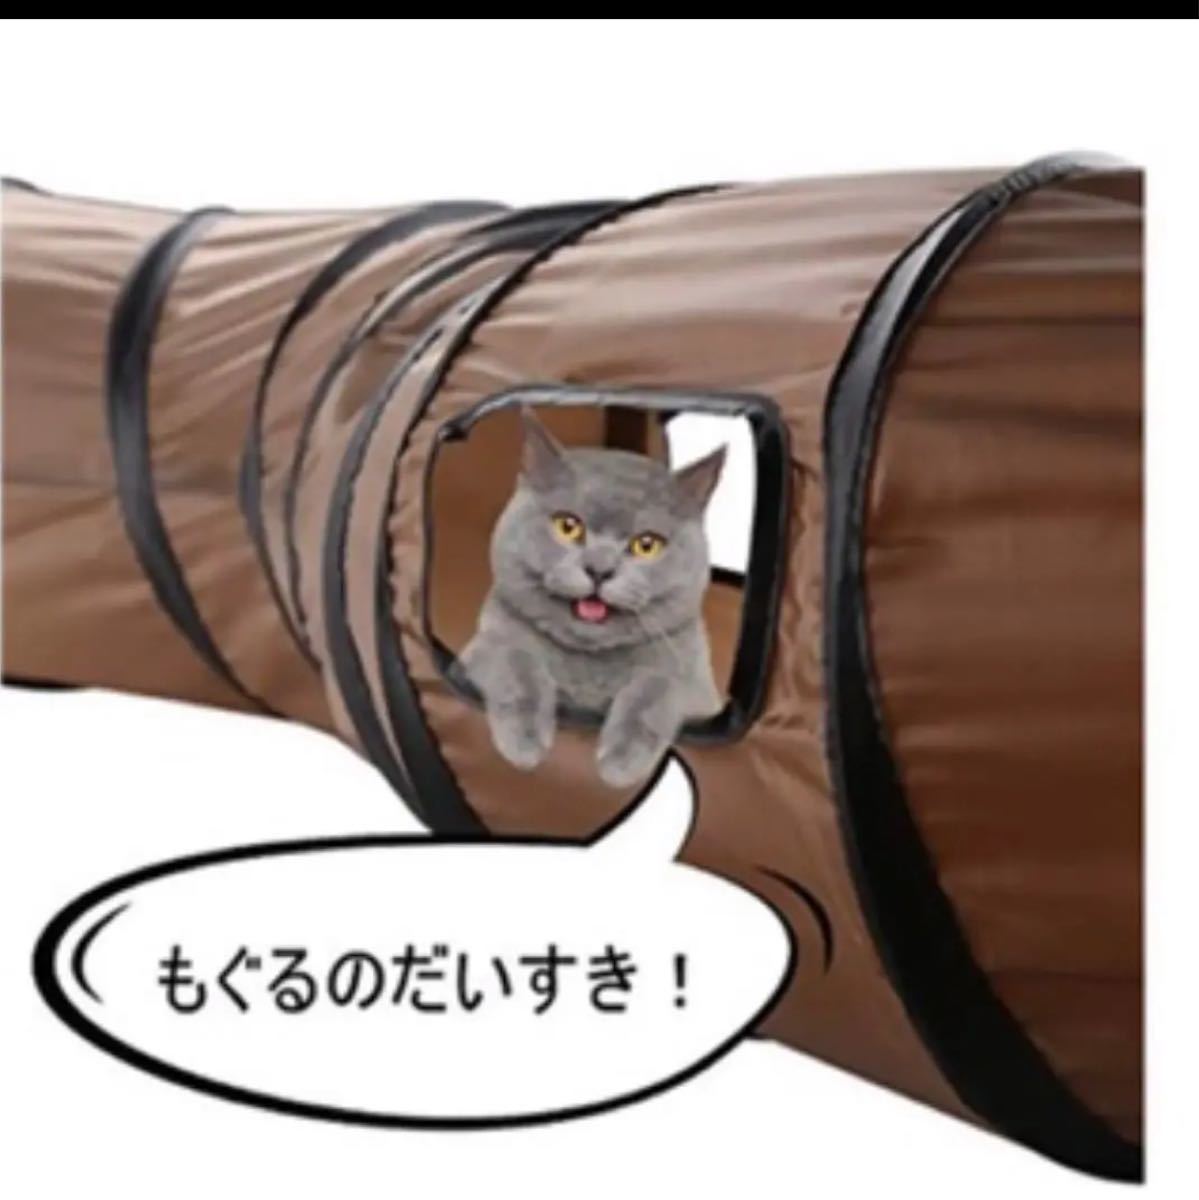 猫 おもちゃ 猫トンネル 折りたたみ可能 カシャカシャ音 夢中 水洗い可能